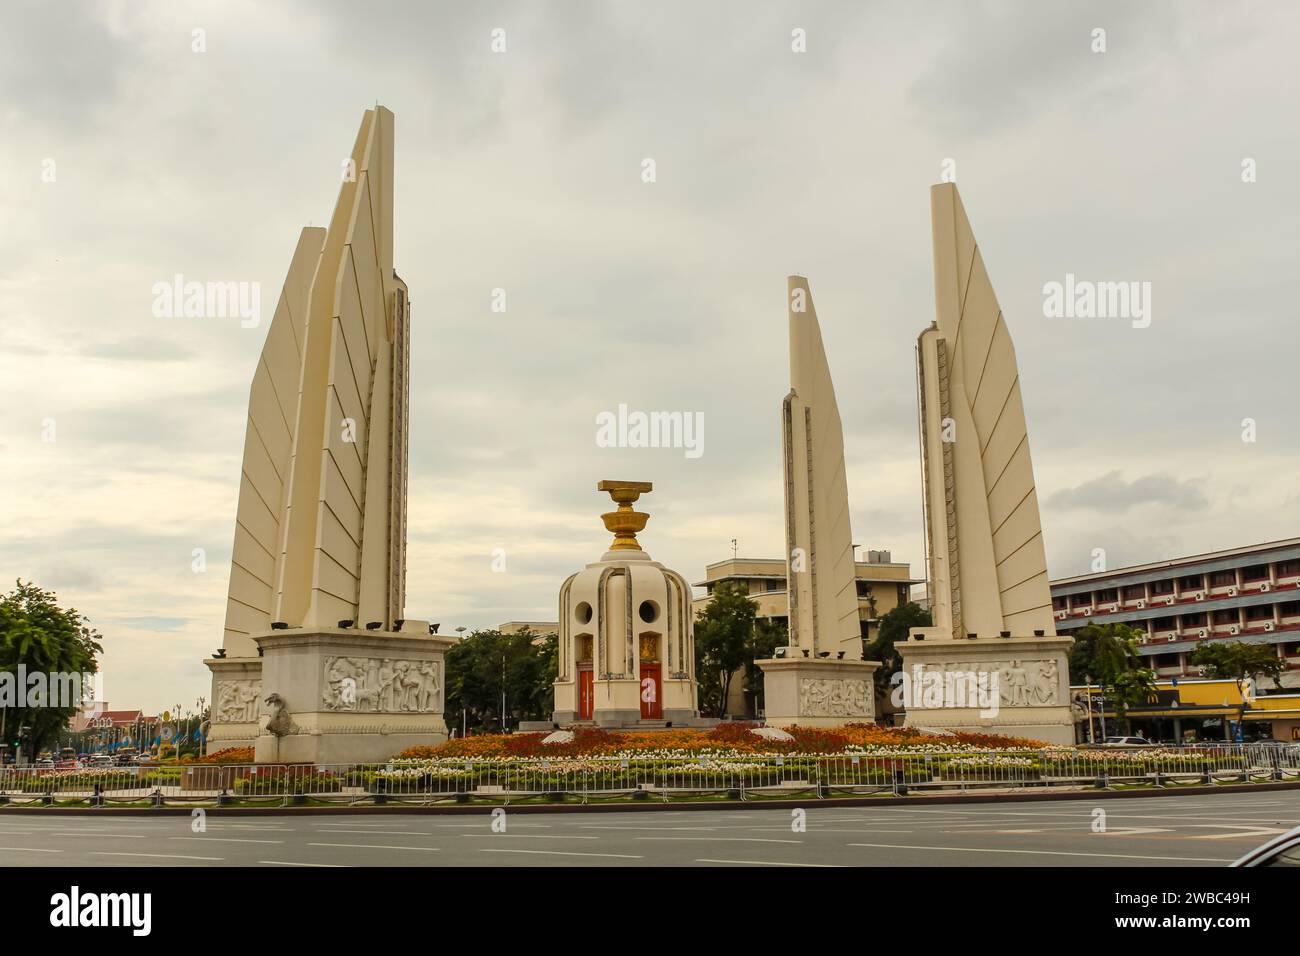 20 AGOSTO 2029, BANGKOK, THAILANDIA: Il Monumento alla democrazia è un monumento pubblico situato nel centro di Bangkok, capitale della Thailandia Foto Stock